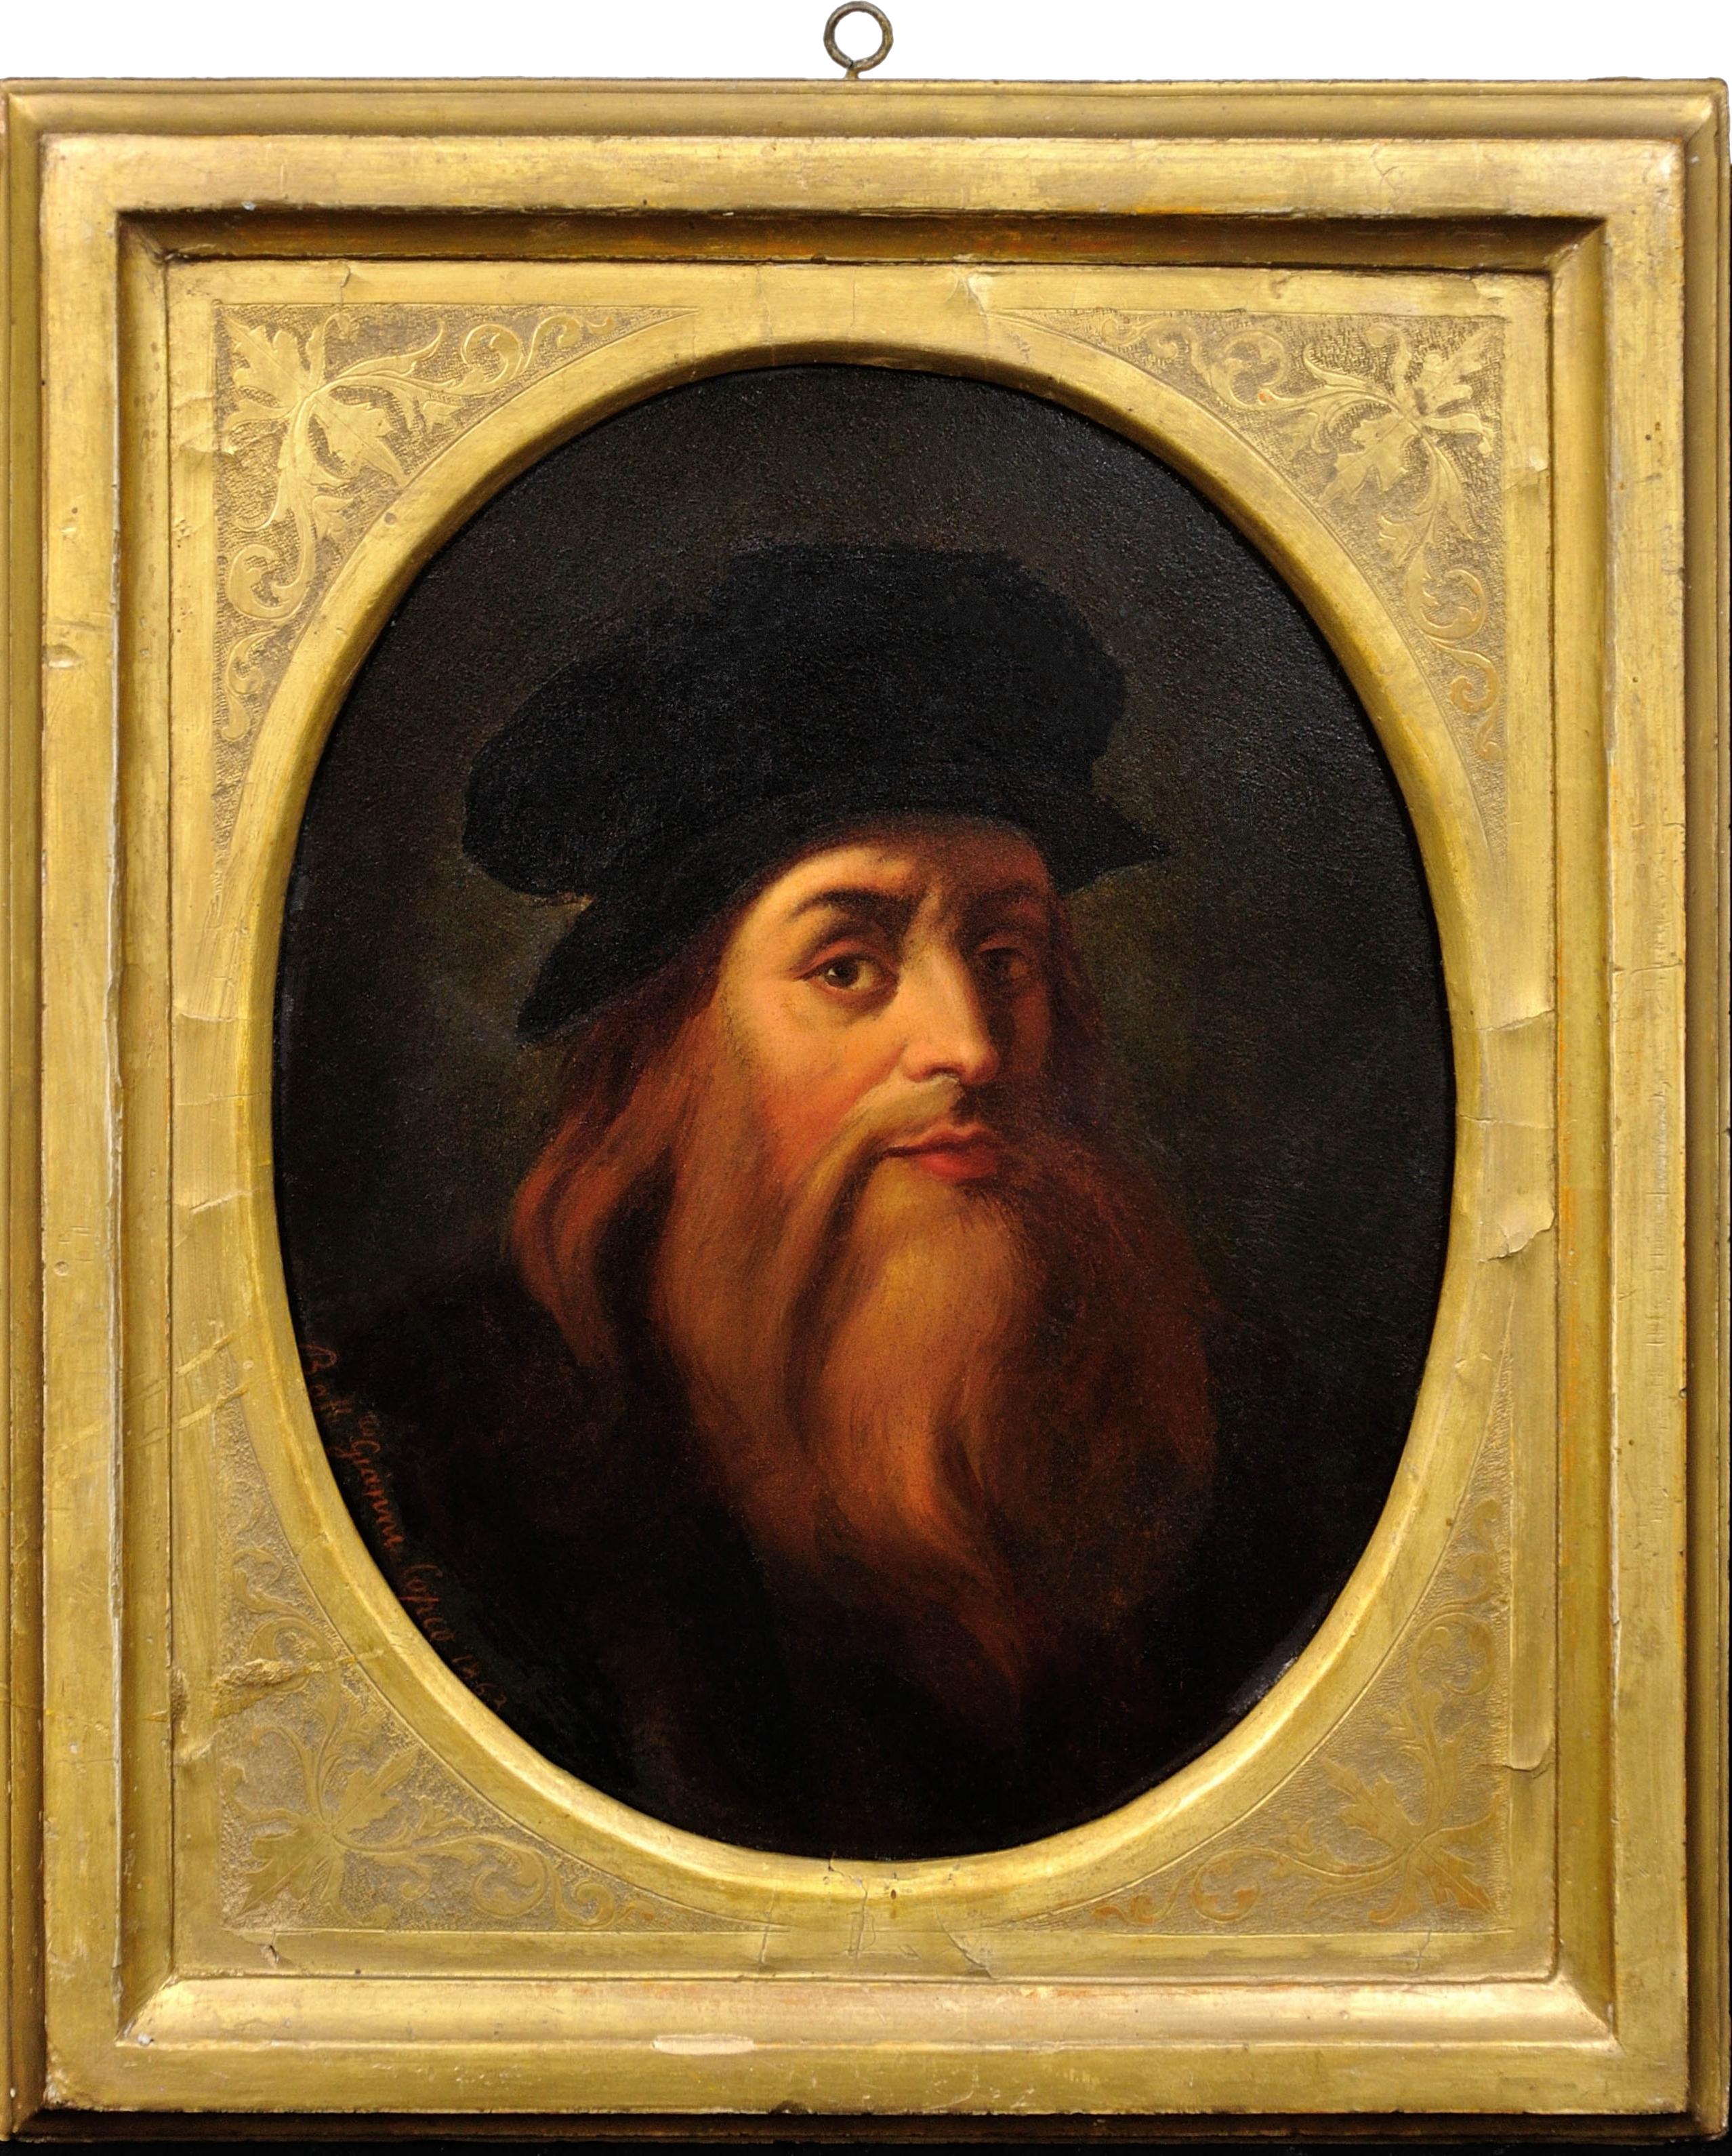 d'après Léonard de Vinci daté de 1863. Autoportrait. Galerie Uffizi à Florence.